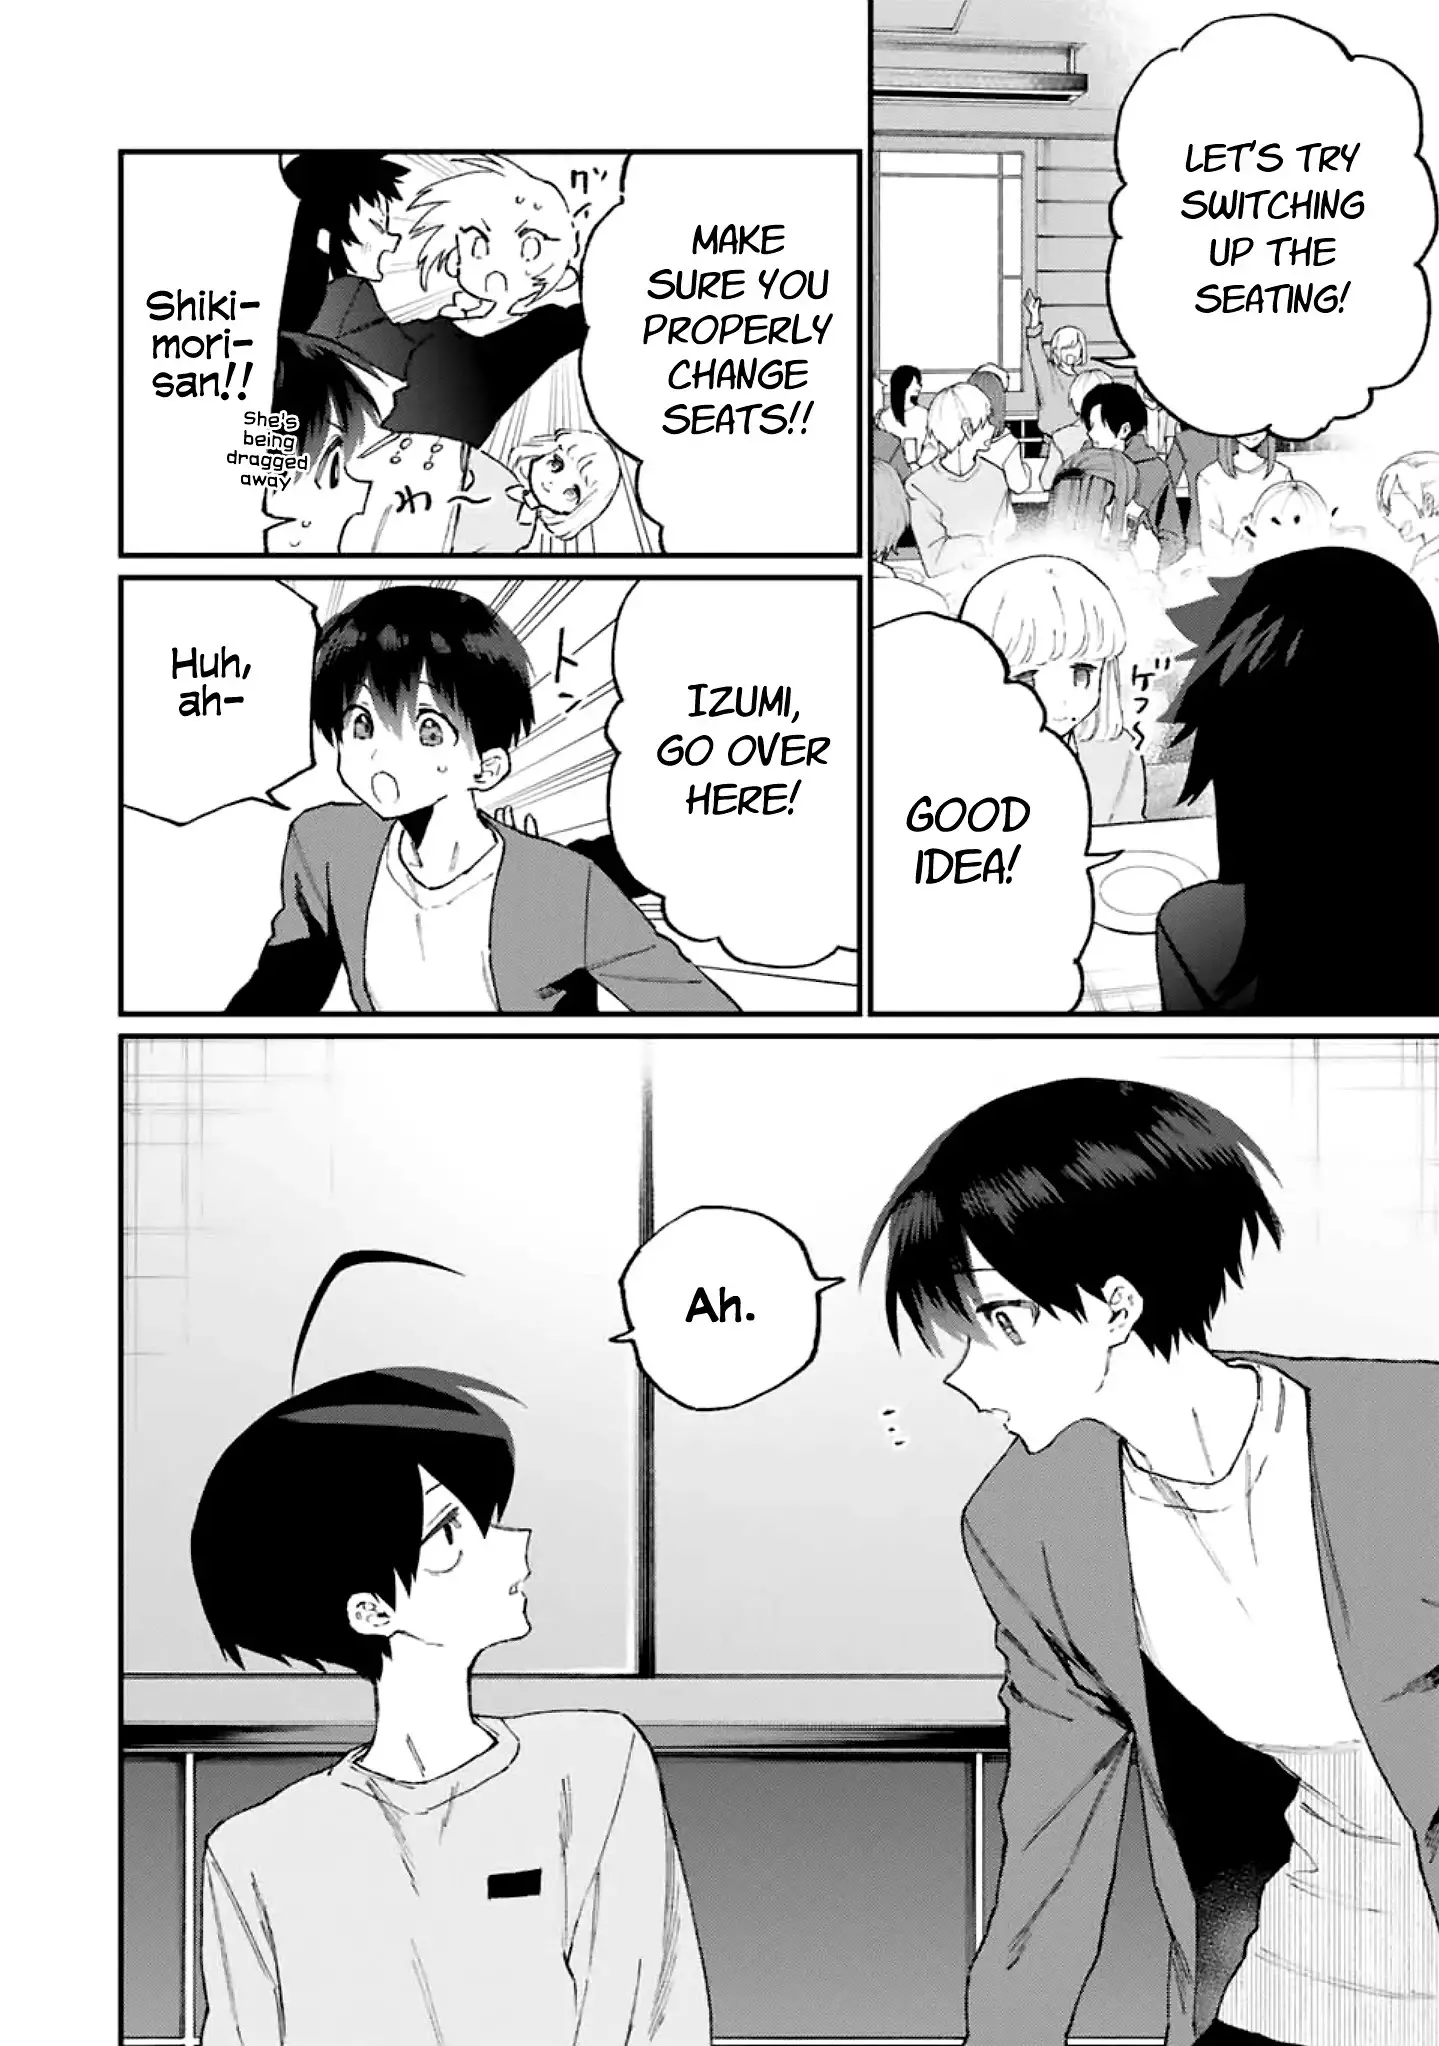 Shikimori's Not Just A Cutie - 116 page 7